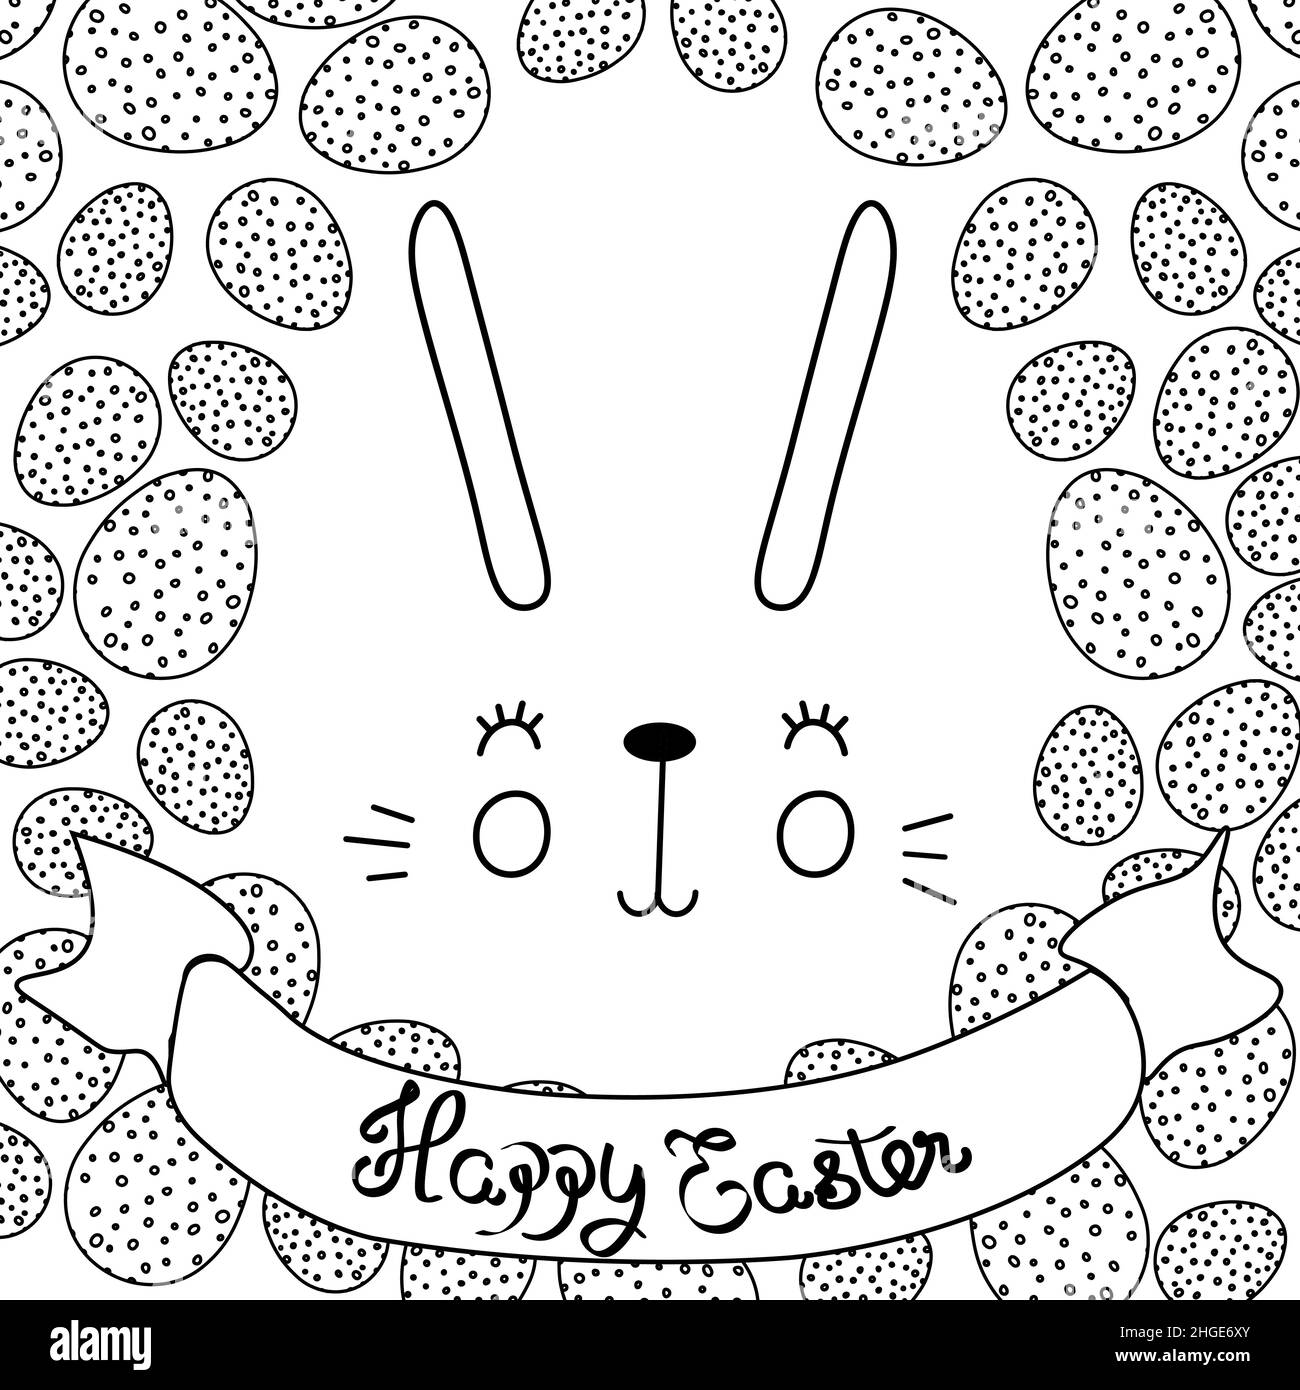 Vektor-Illustration von niedlichen Hase mit hellen Eiern. Frohe Ostern Grüße Text. Design für Web, Website, Banner, Poster, Karte, Papierdruck, Postkarte Stock Vektor